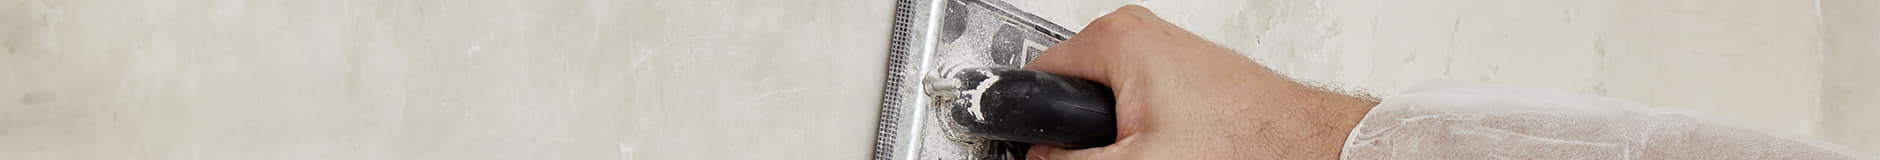 Tillämpning av färdigblandat mikrocement på en icke-trampbar yta med en spackel